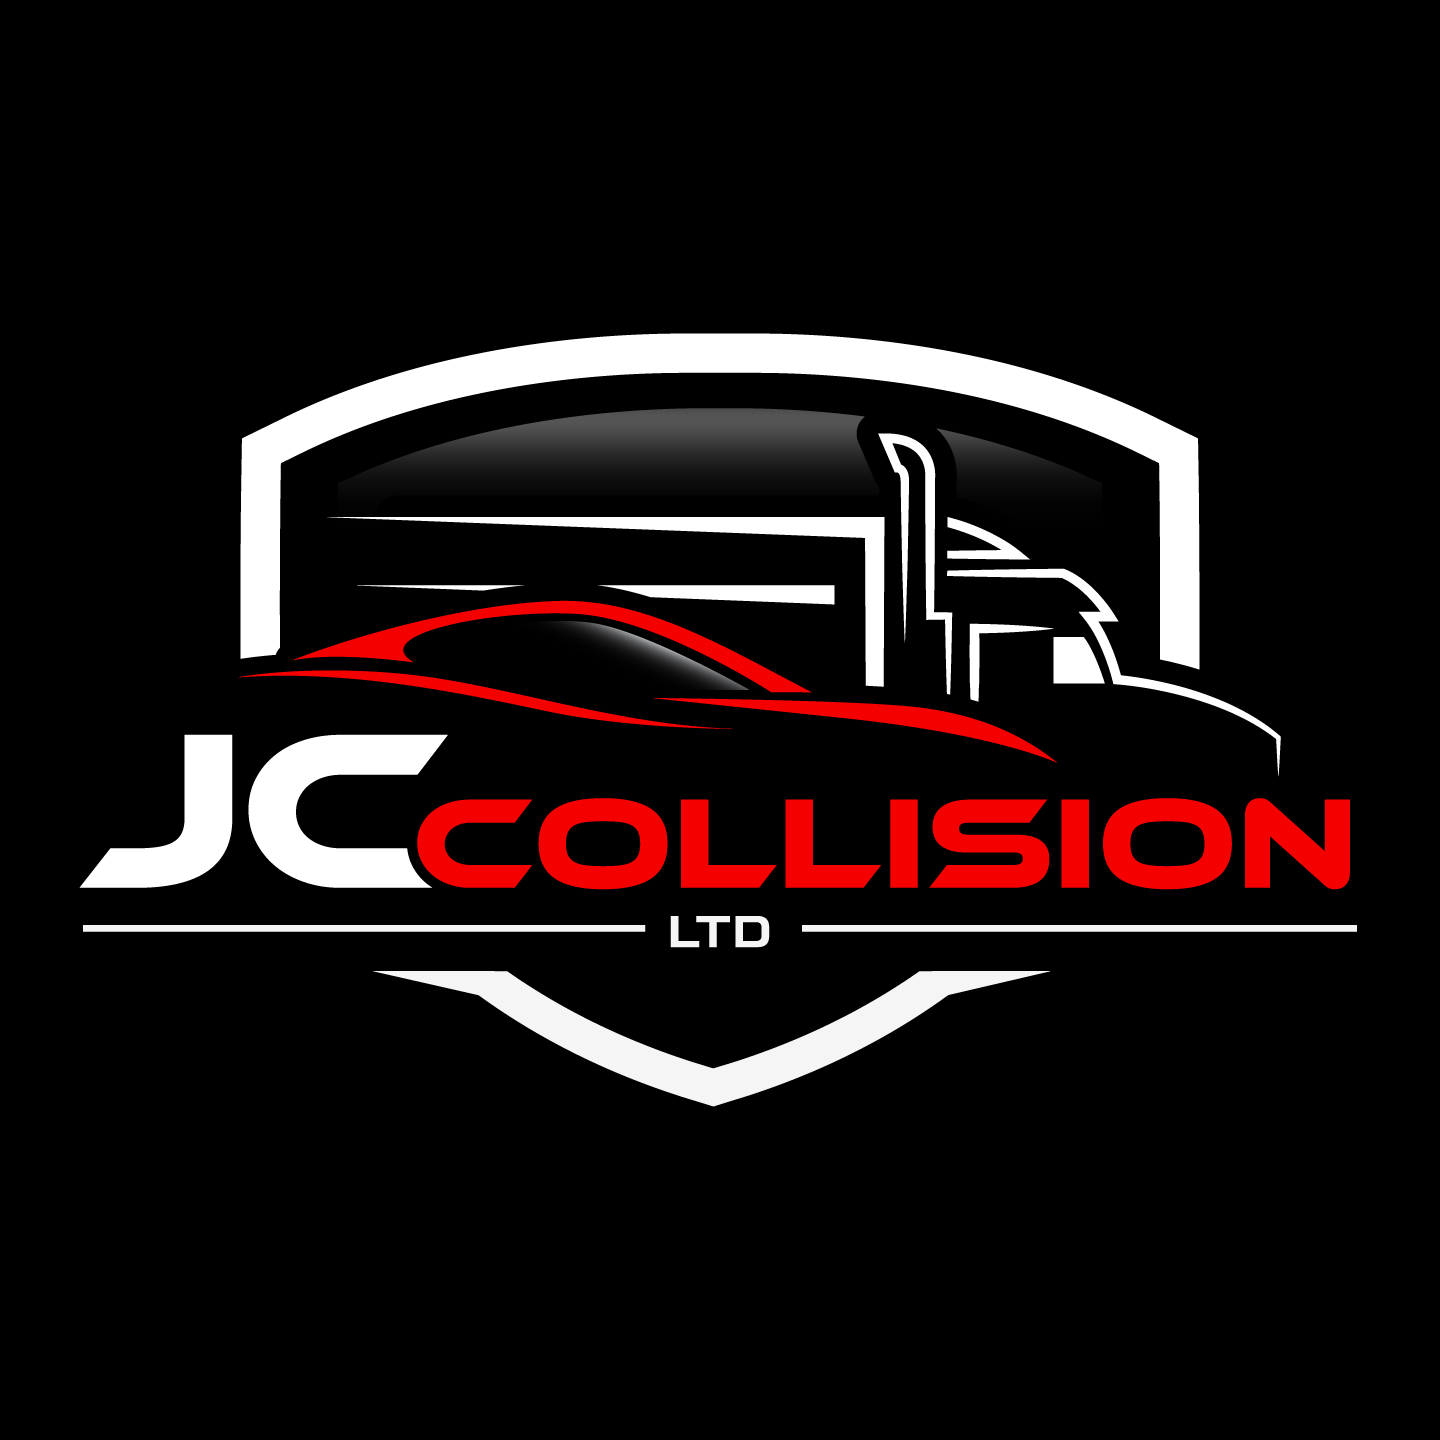 JC Collision Ltd